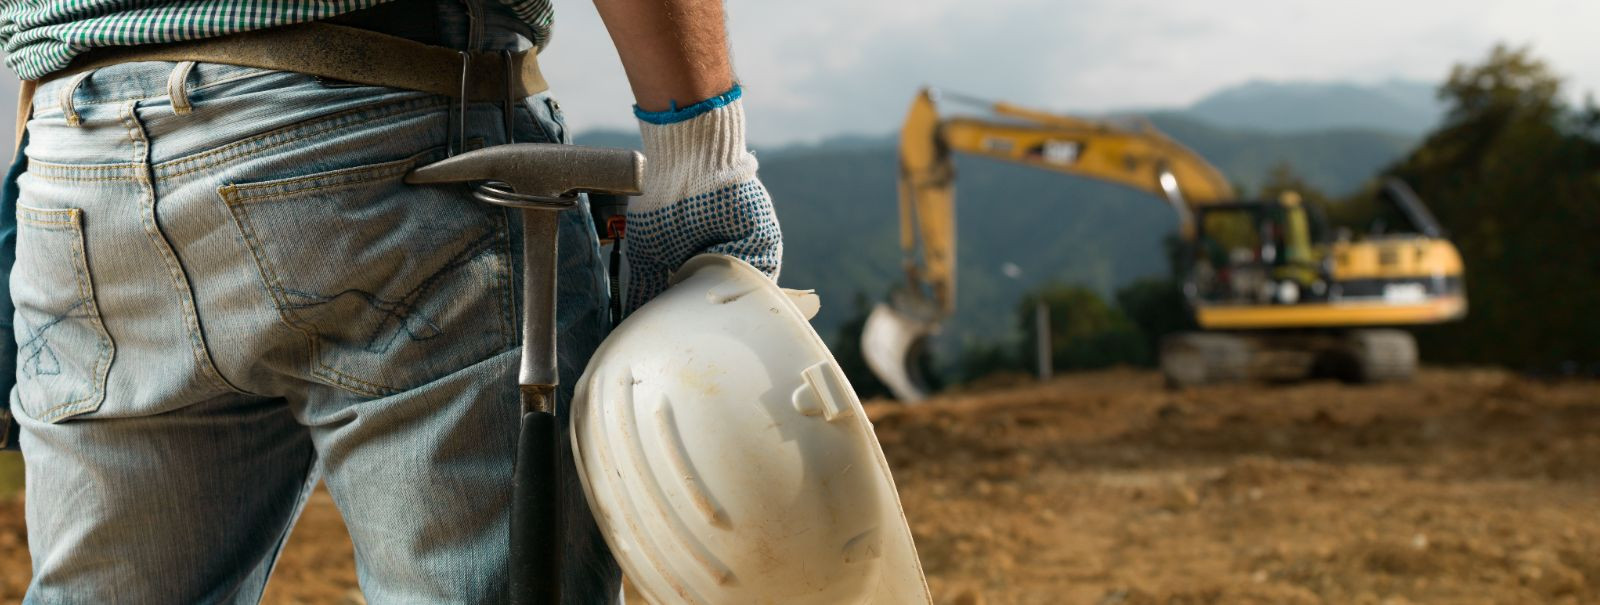 Kaevamine on kriitiline esimene samm igas ehitus- või maastikukujundusprojektis, mis loob aluse edukaks ehituseks. See hõlmab mulla, kivi ja muude materjalide e